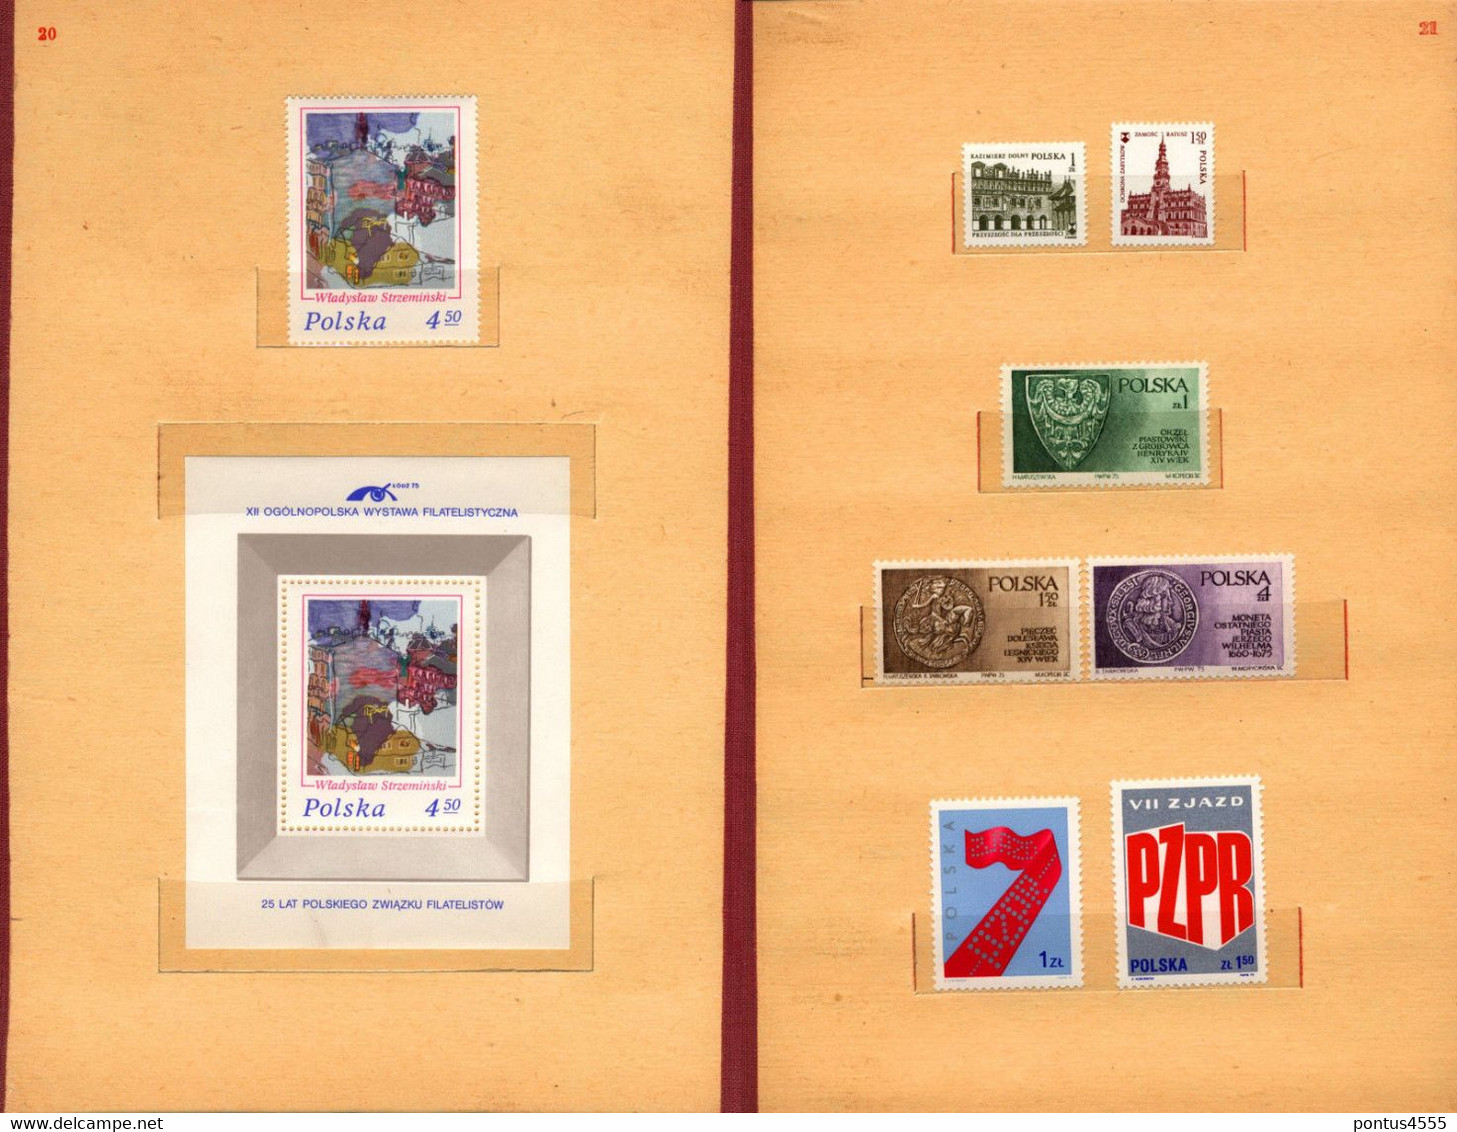 Poland collection 1974-1975 MNH